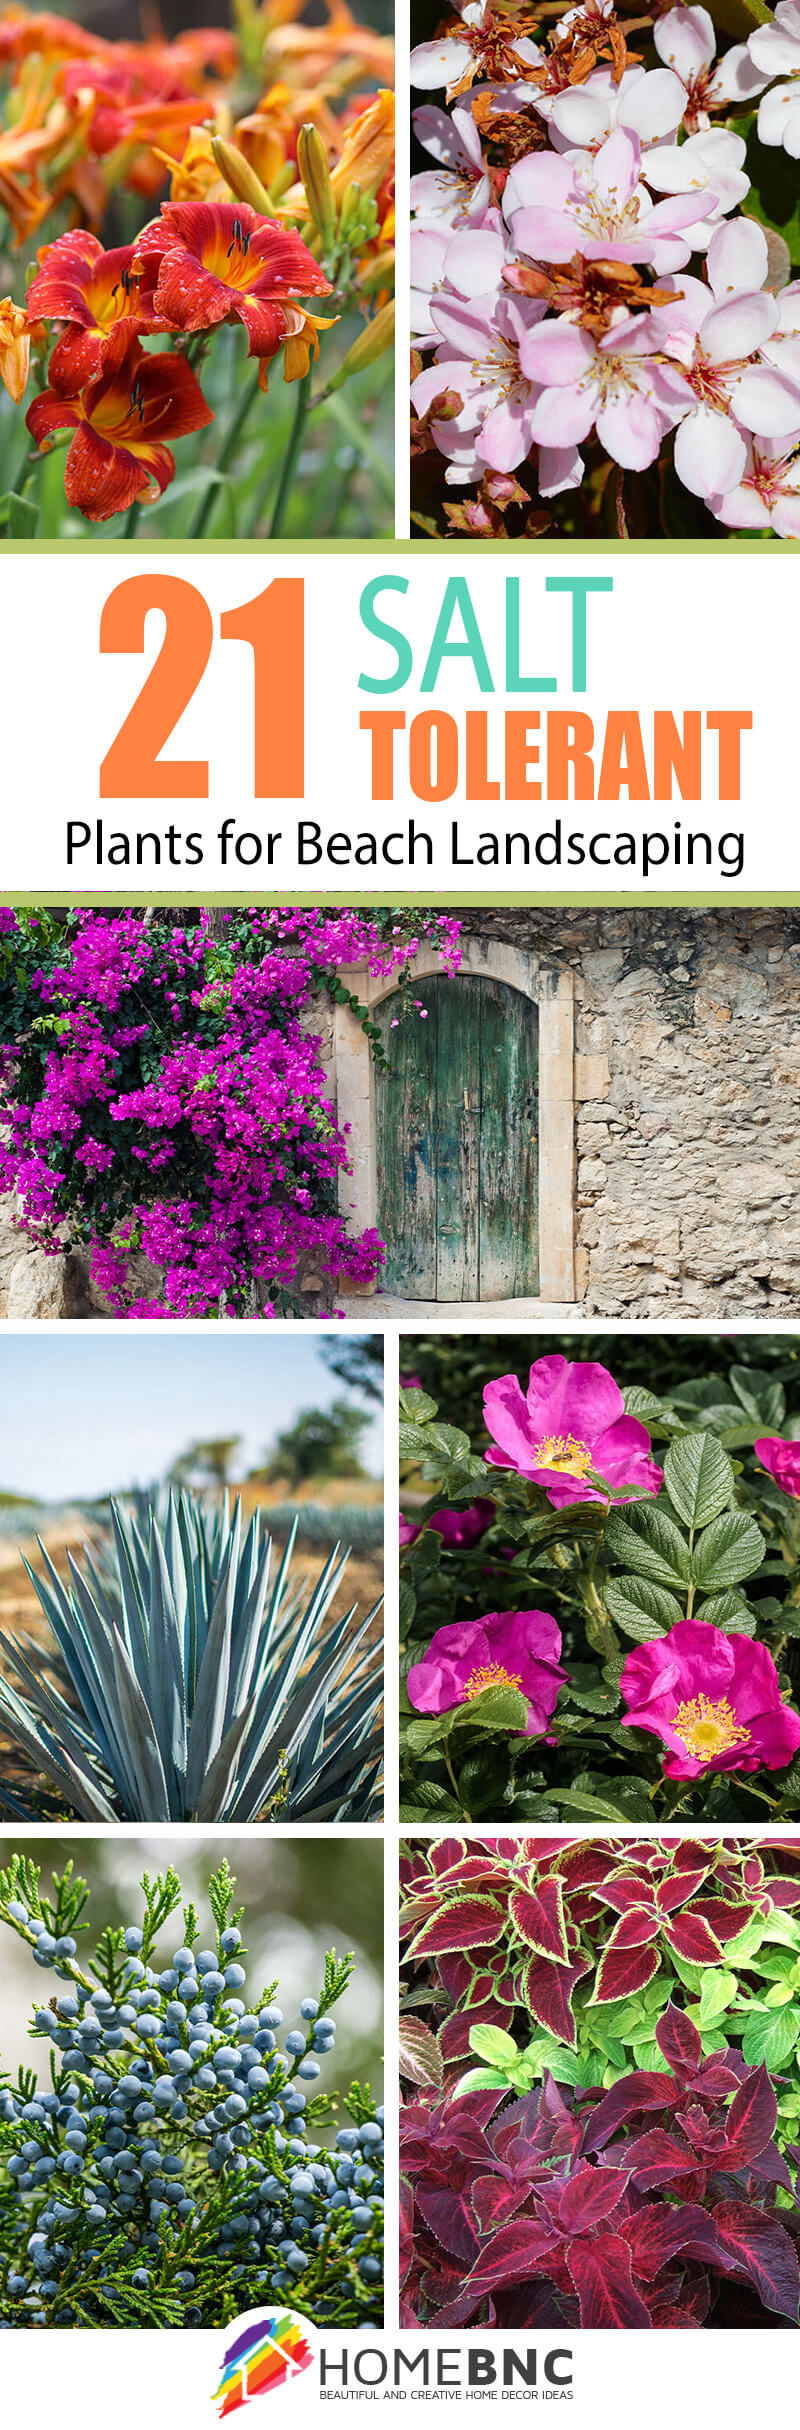 Salt-Tolerant Plants for Beach Landscaping